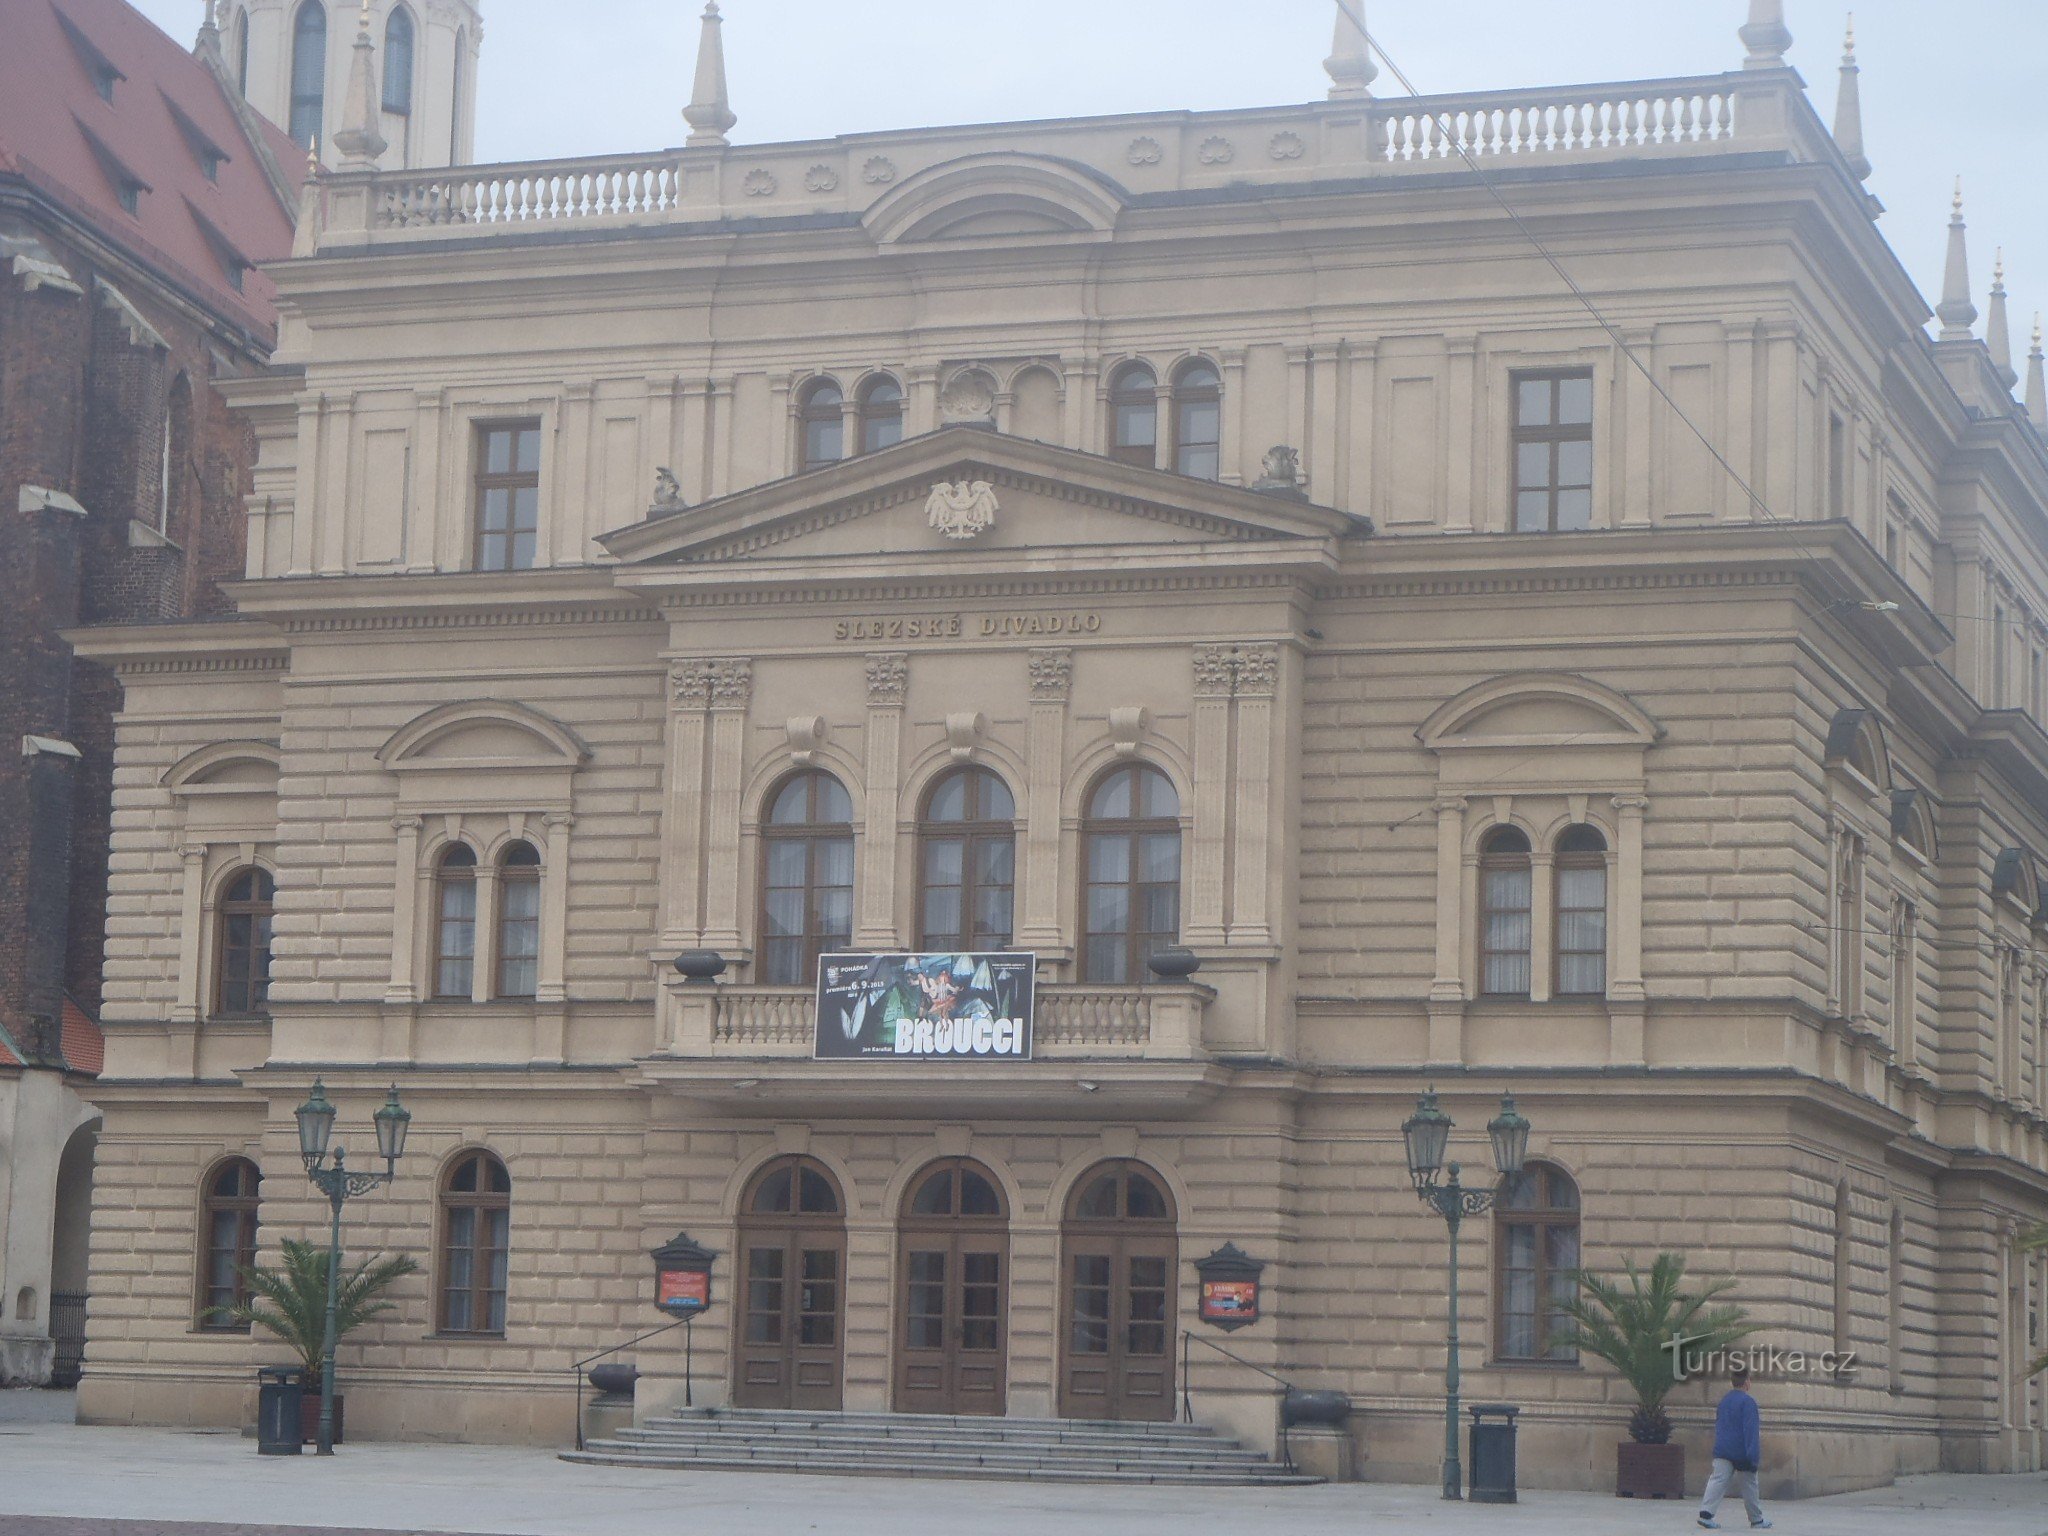 Šlezijsko gledališče